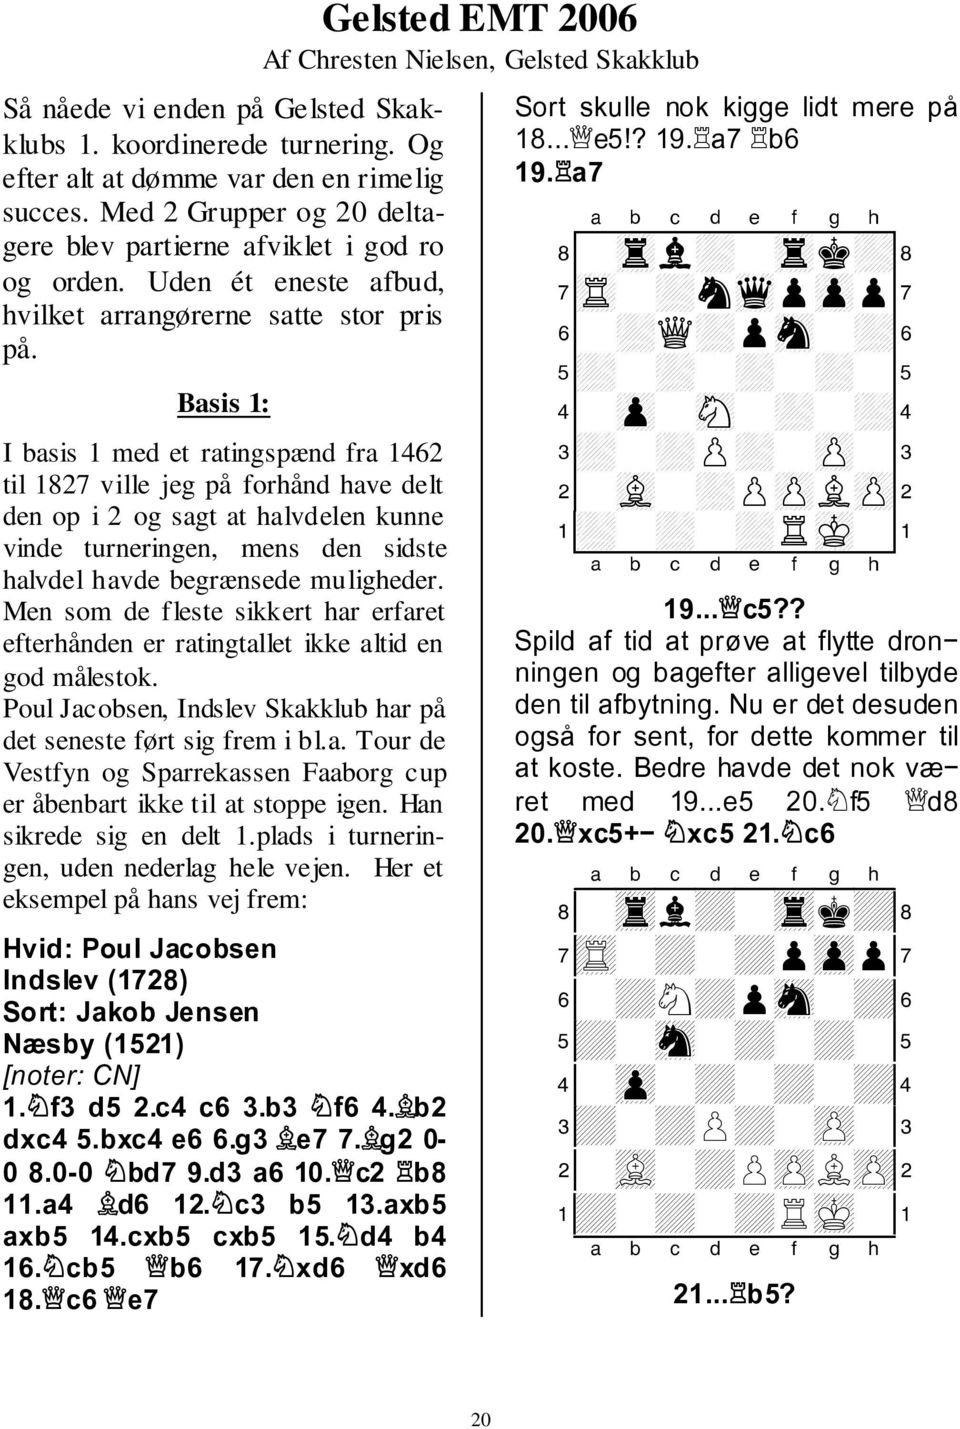 Basis 1: I basis 1 med et ratingspænd fra 1462 til 1827 ville jeg på forhånd have delt den op i 2 og sagt at halvdelen kunne vinde turneringen, mens den sidste halvdel havde begrænsede muligheder.